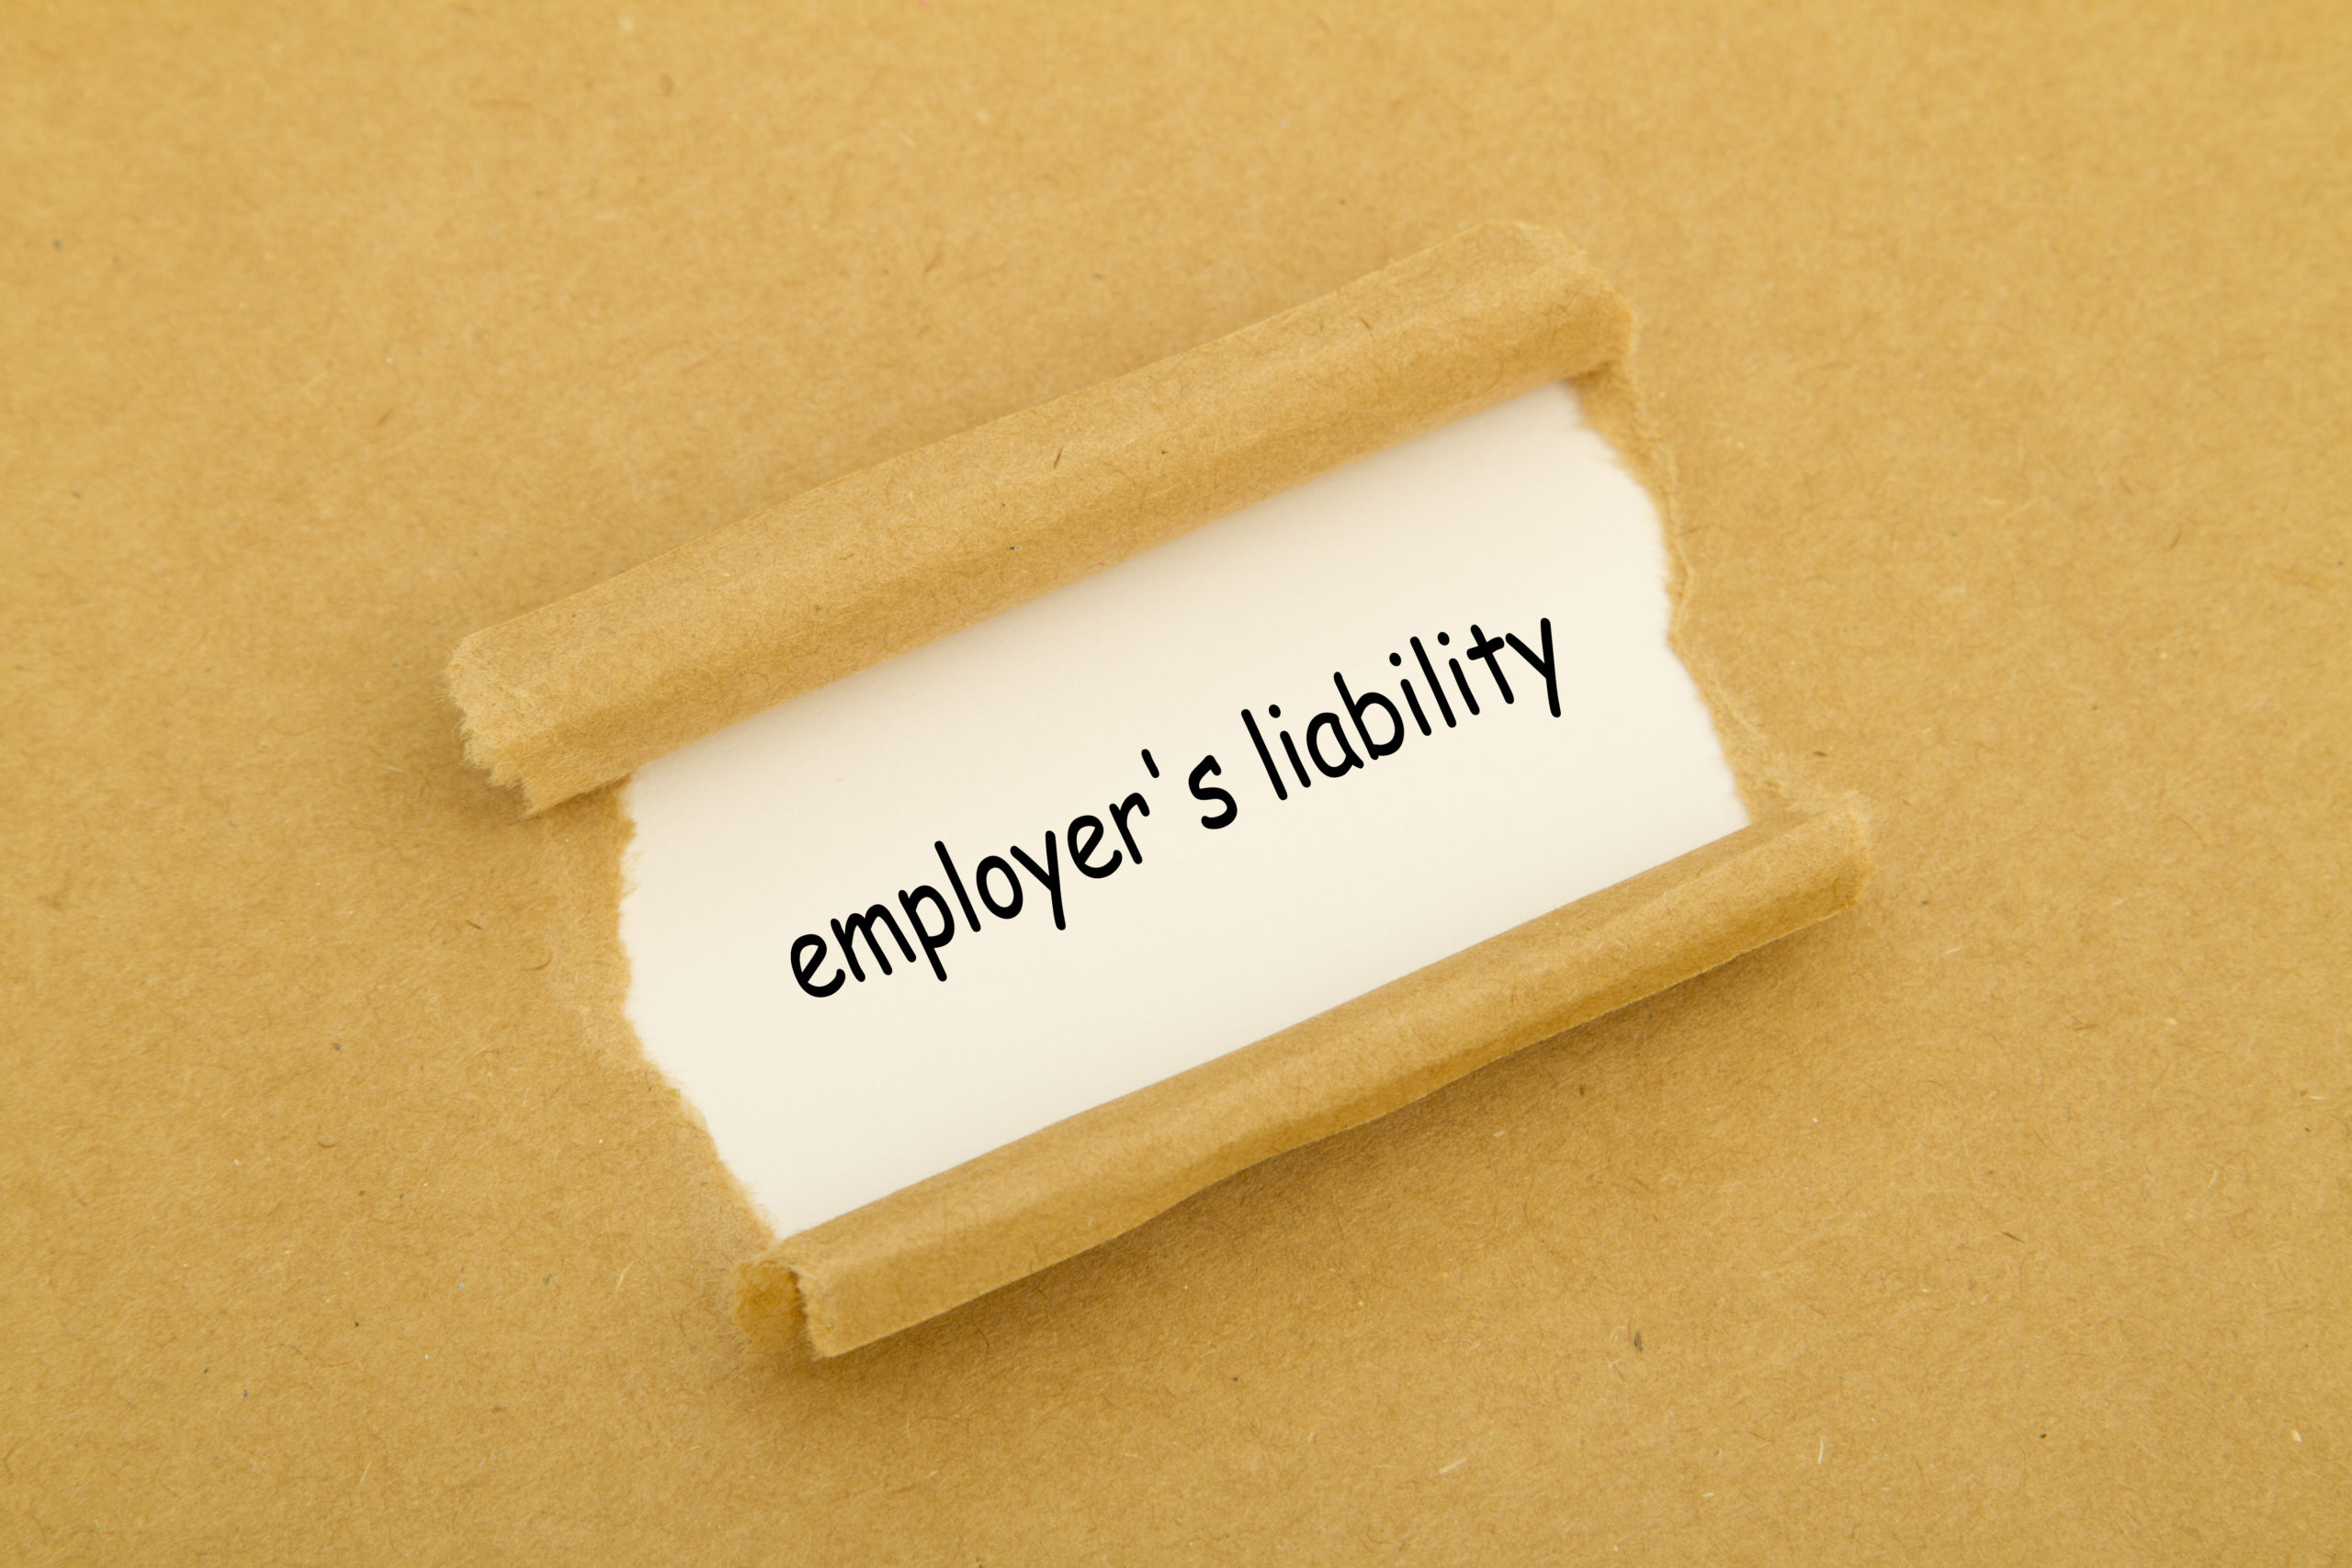 Employers Liability Written On Paper